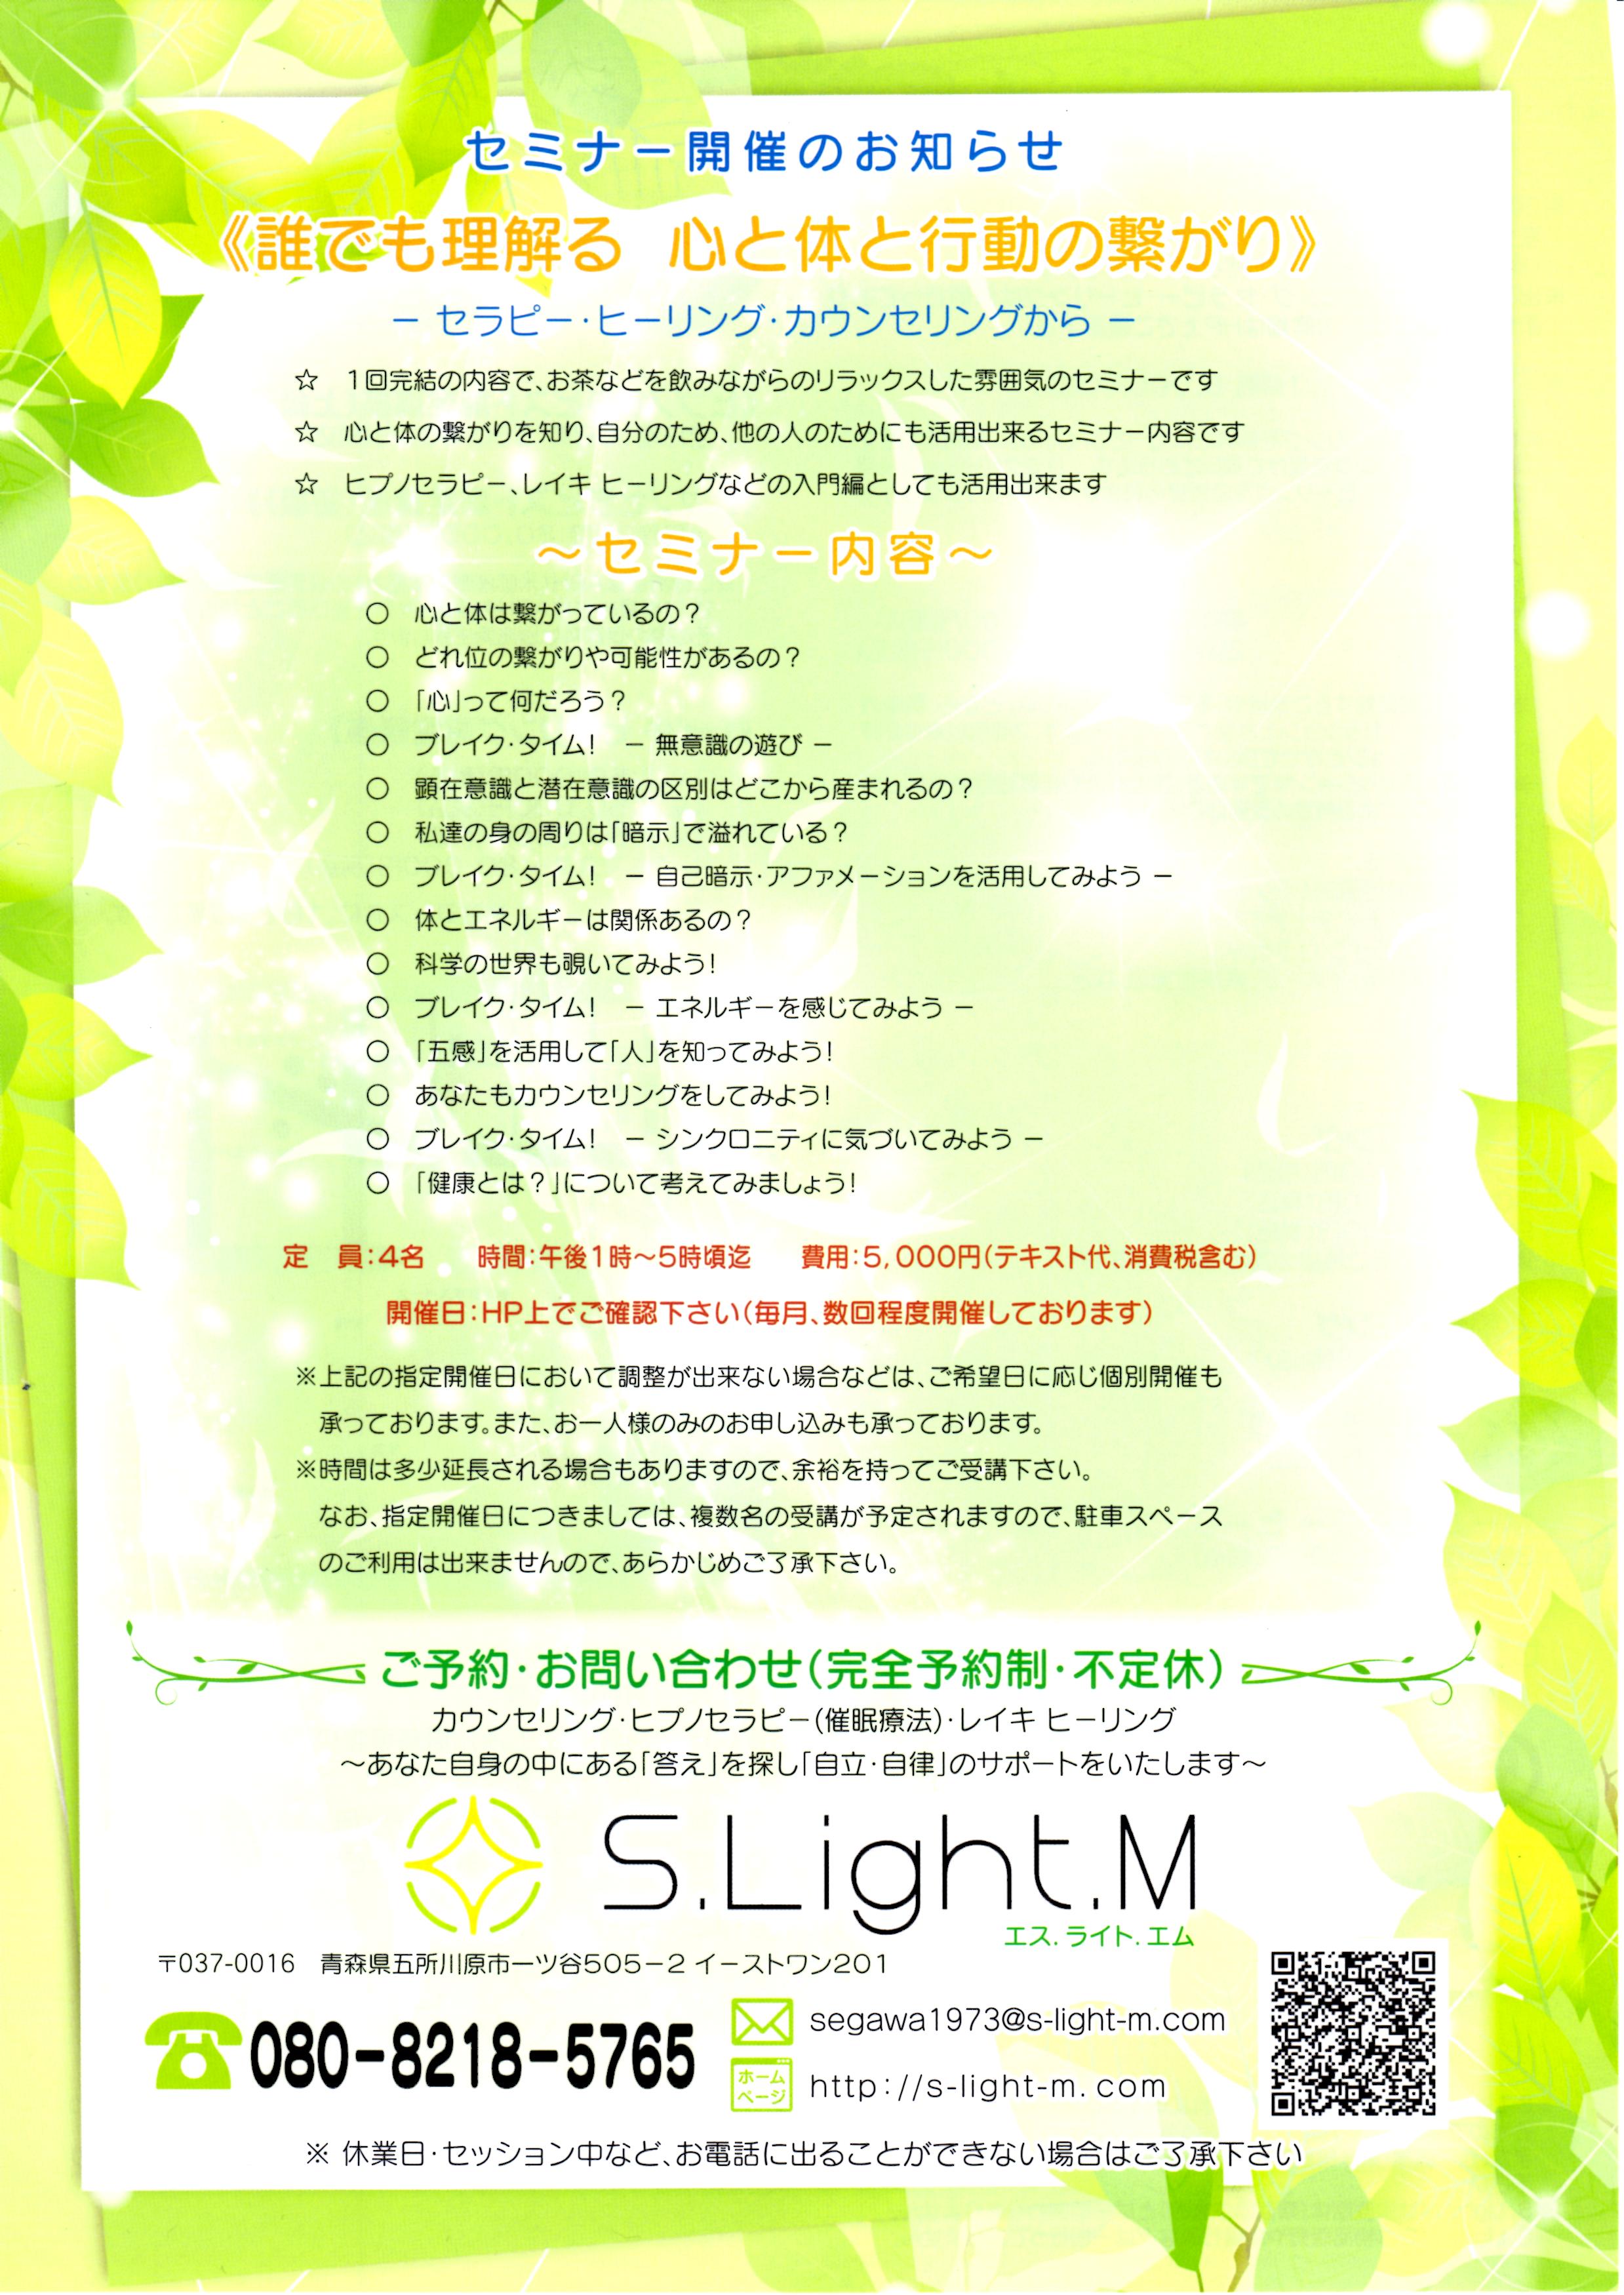 S.Light.M.jpg